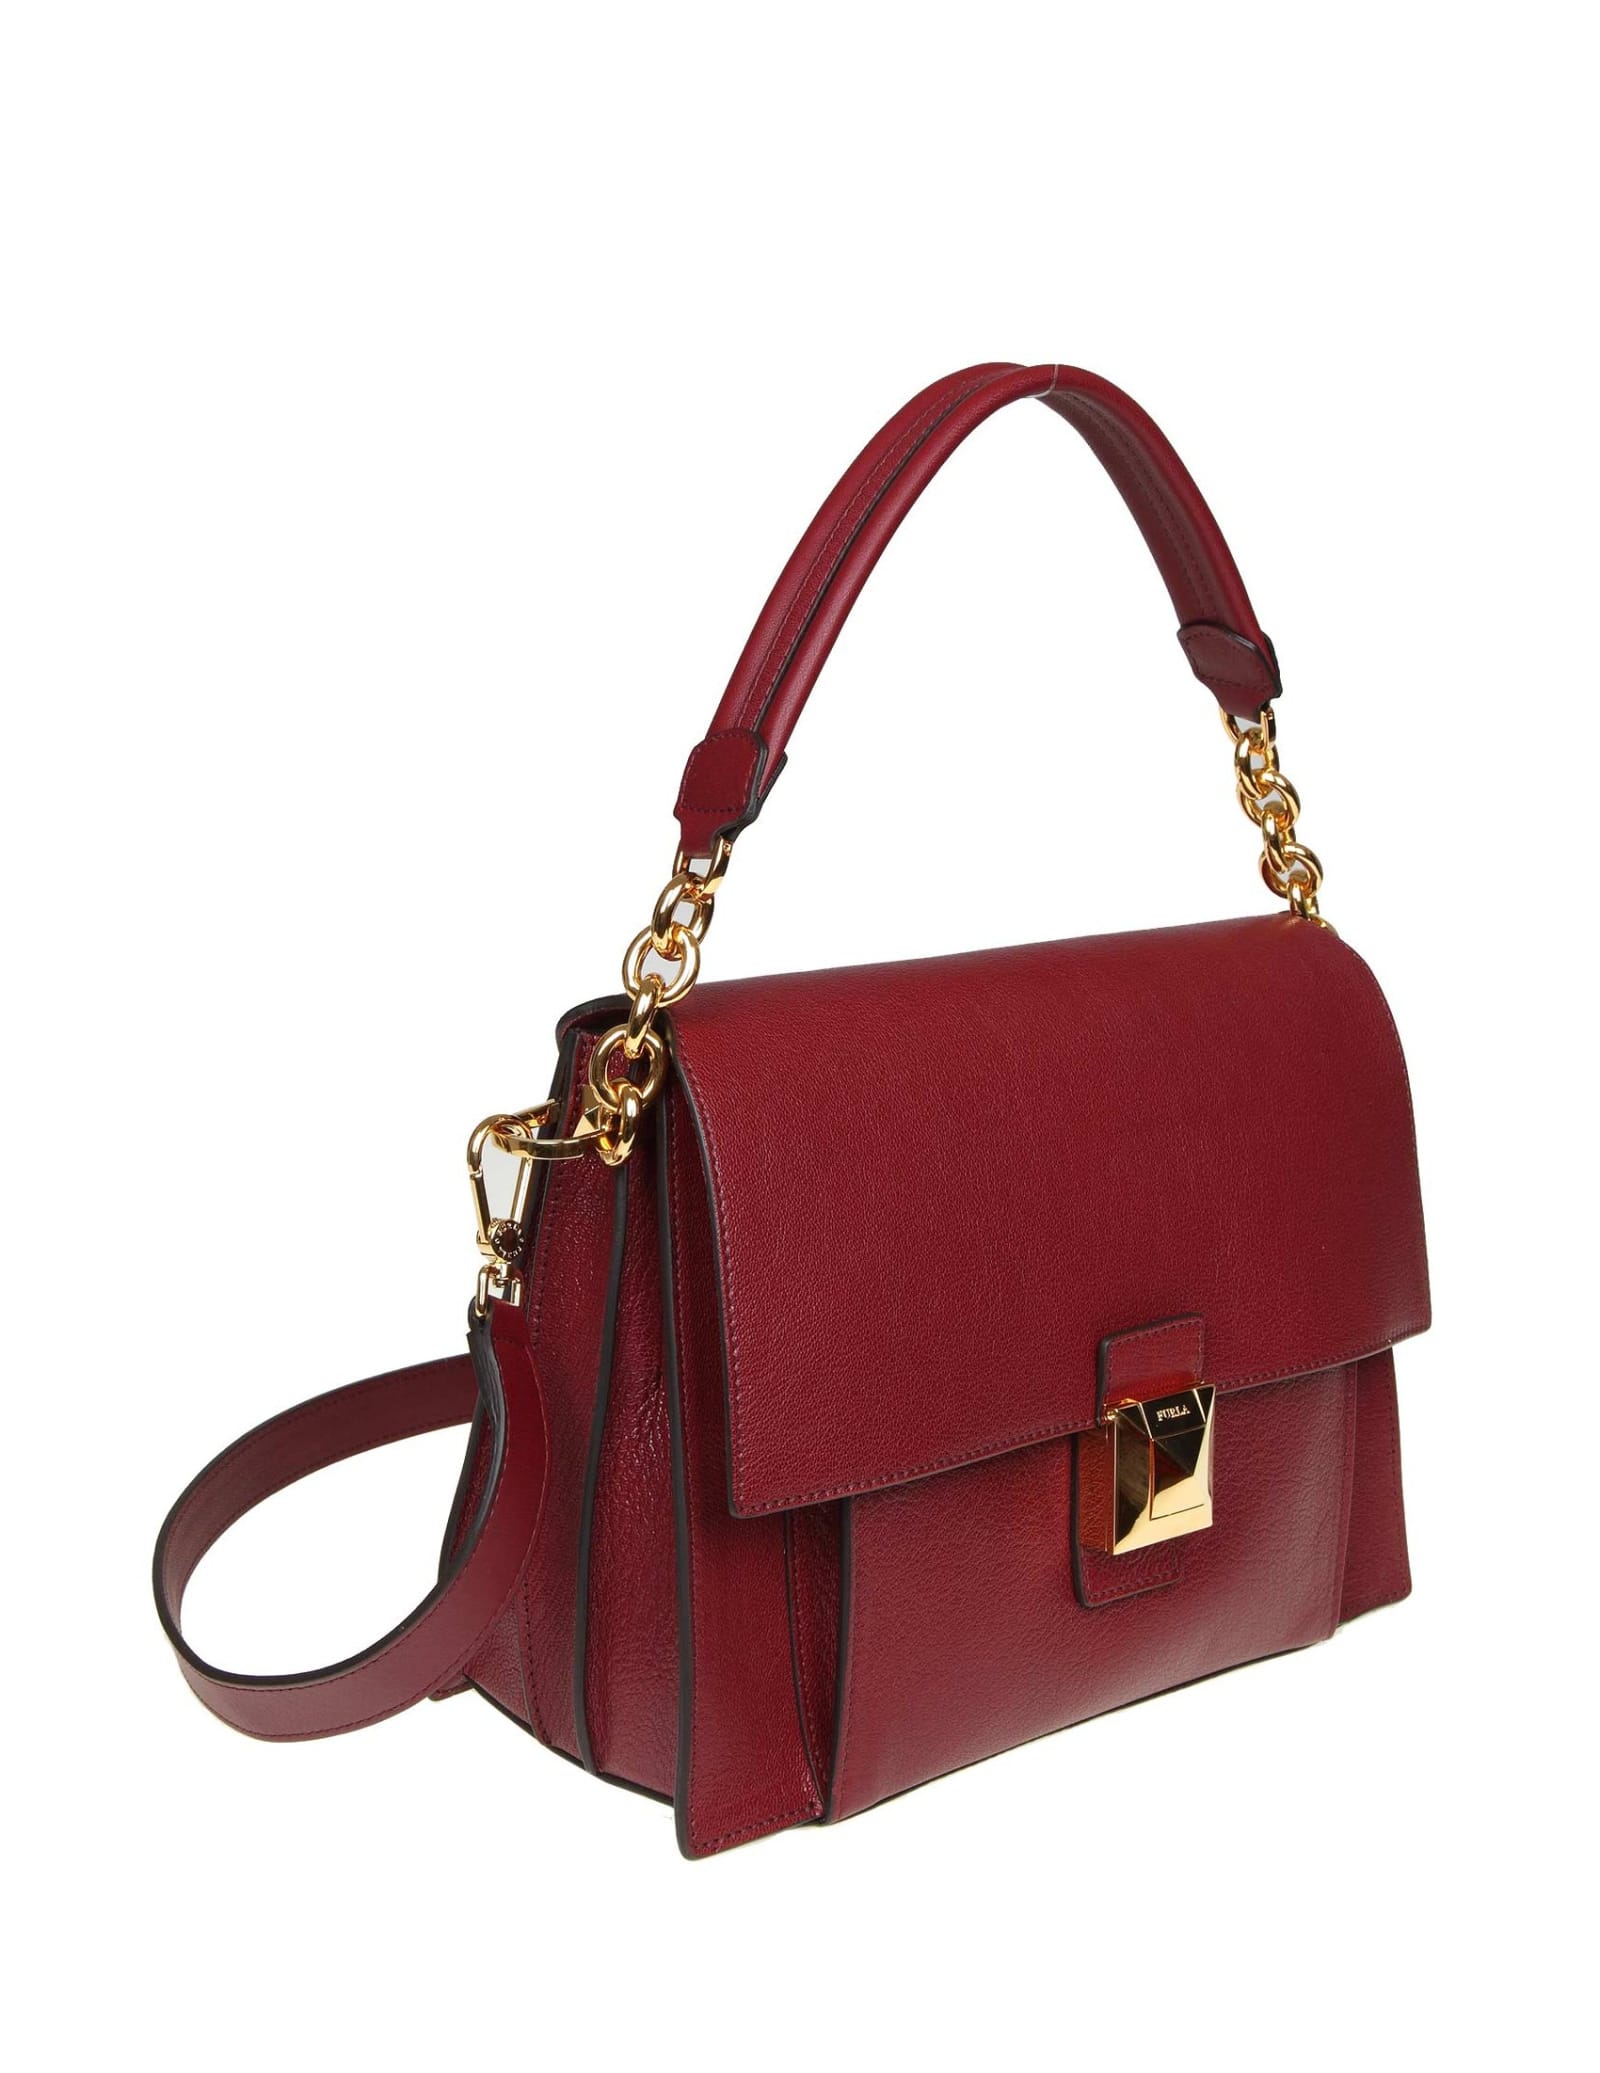 Furla Furla Diva M Shoulder Bag In Cherry Color Leather - 10999587 ...